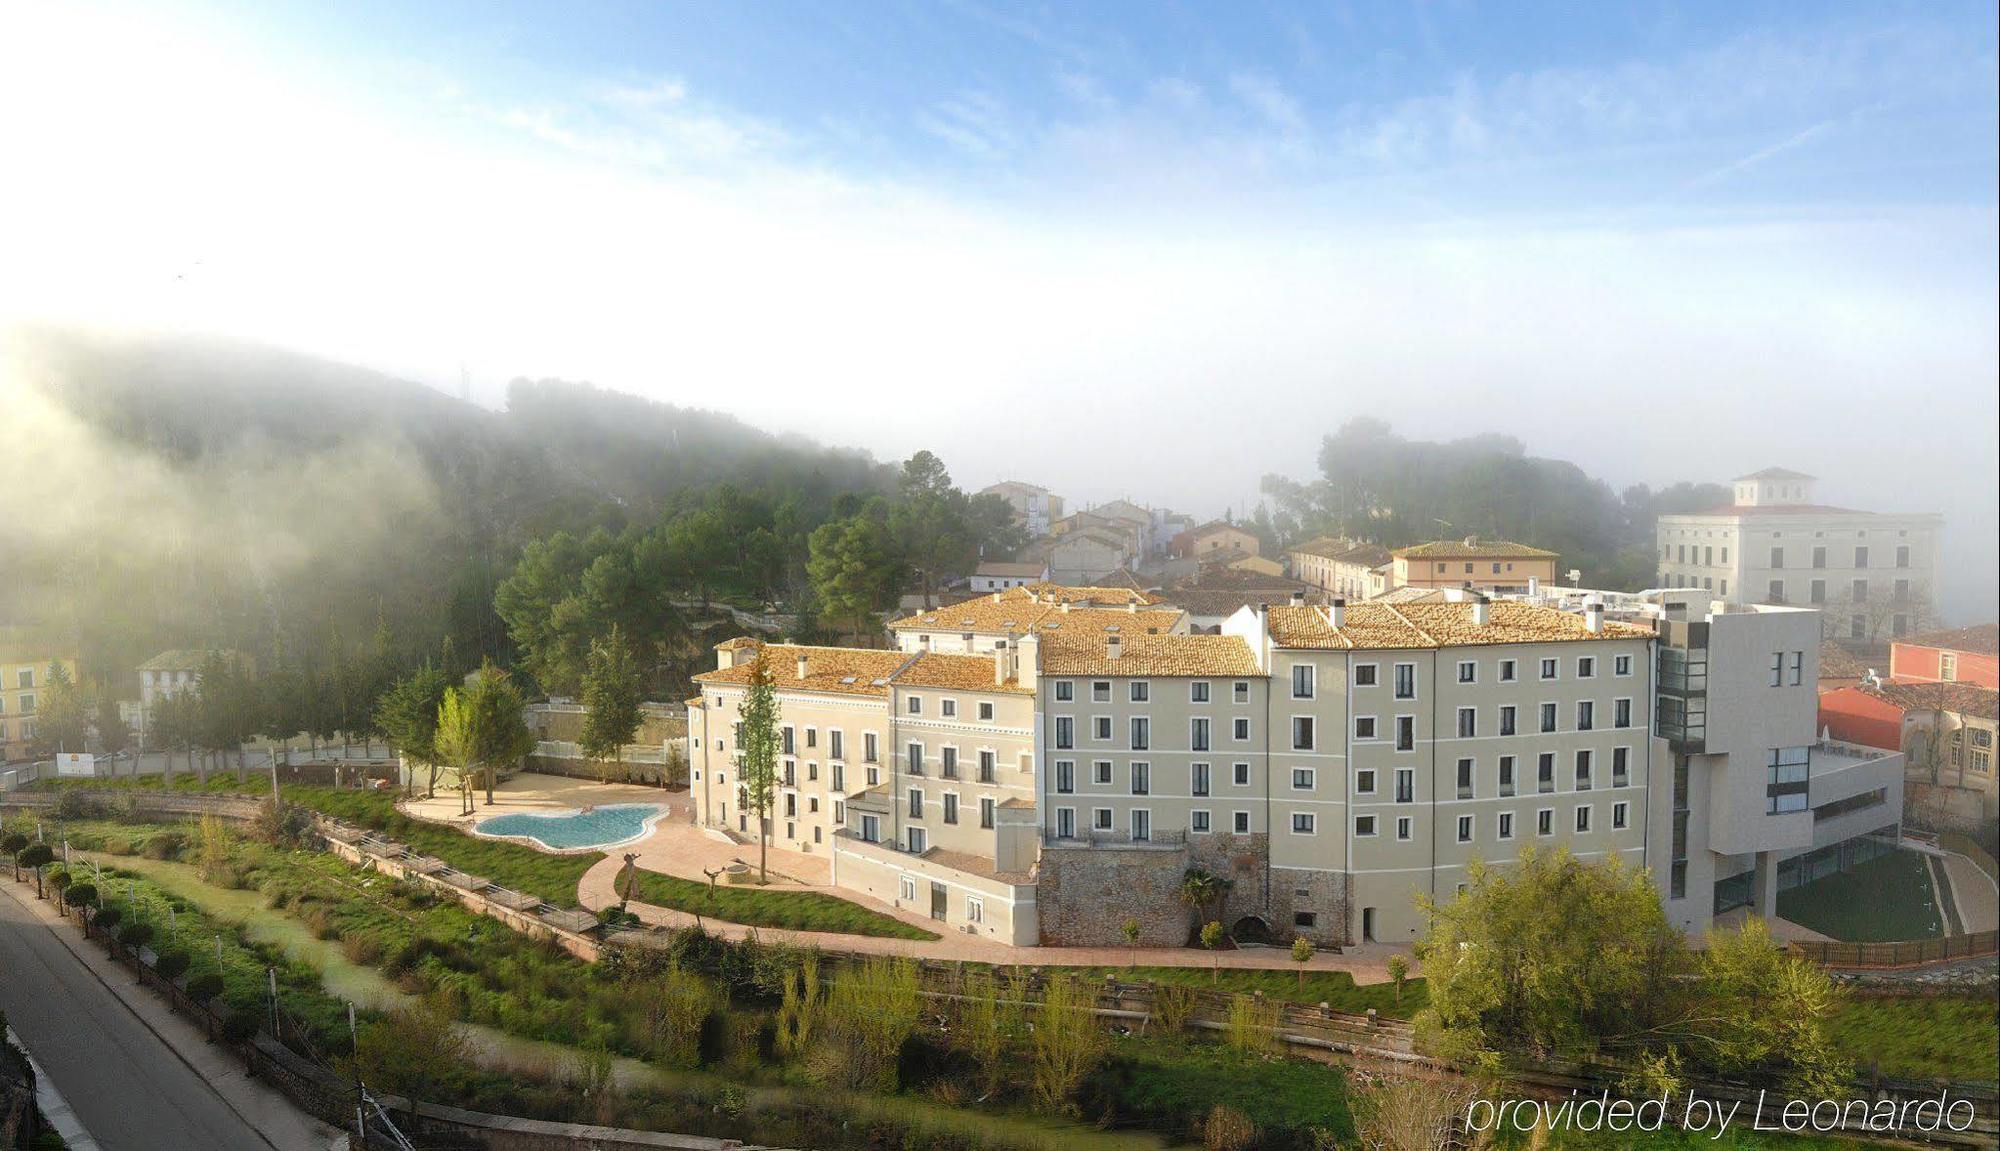 Hotel Balneario Alhama de Aragón Eksteriør bilde